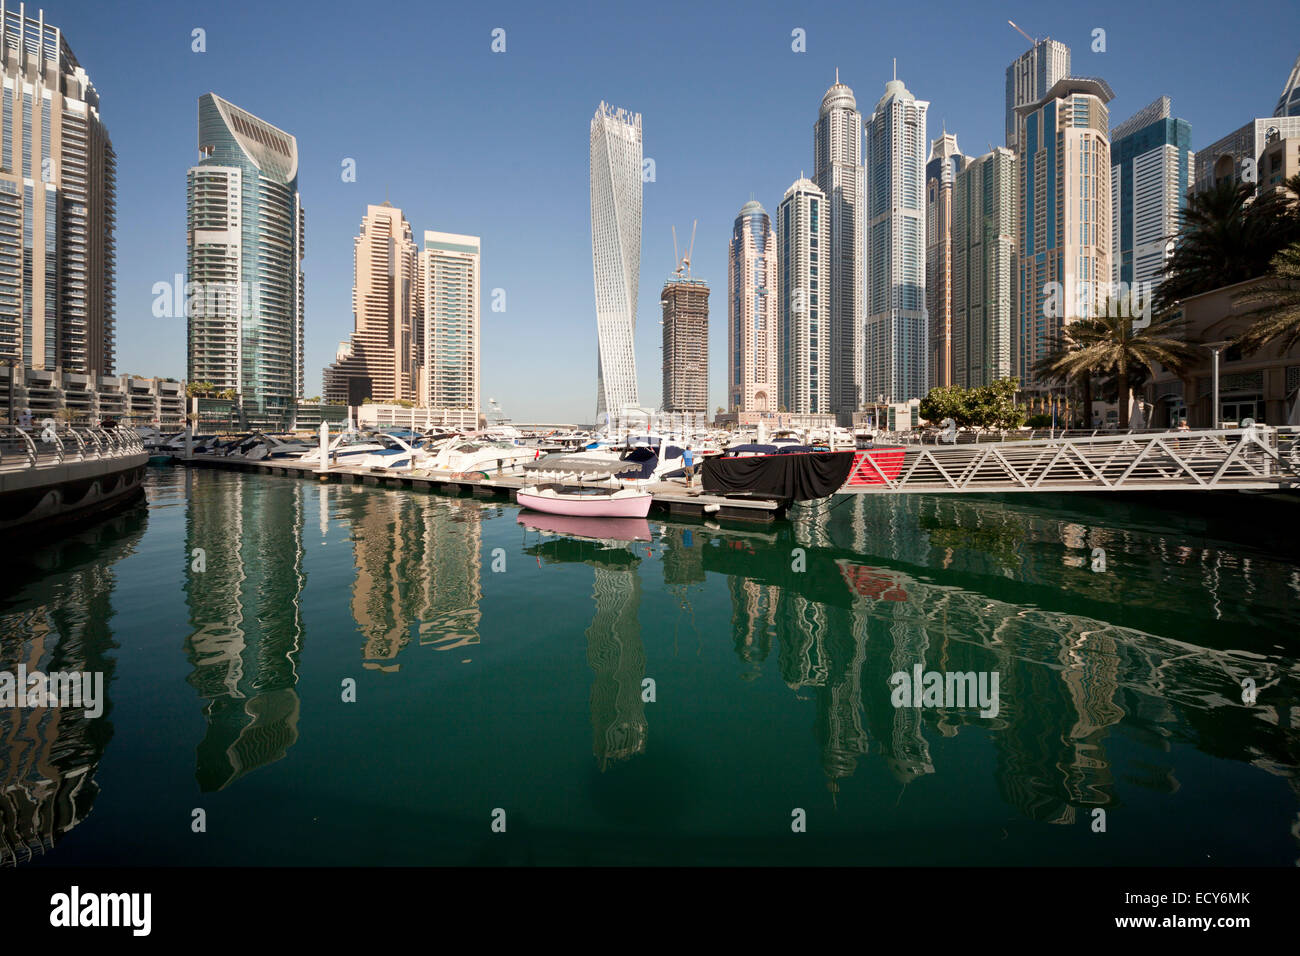 Marina and skyscrapers, Dubai Marina, Dubai, United Arab Emirates Stock Photo